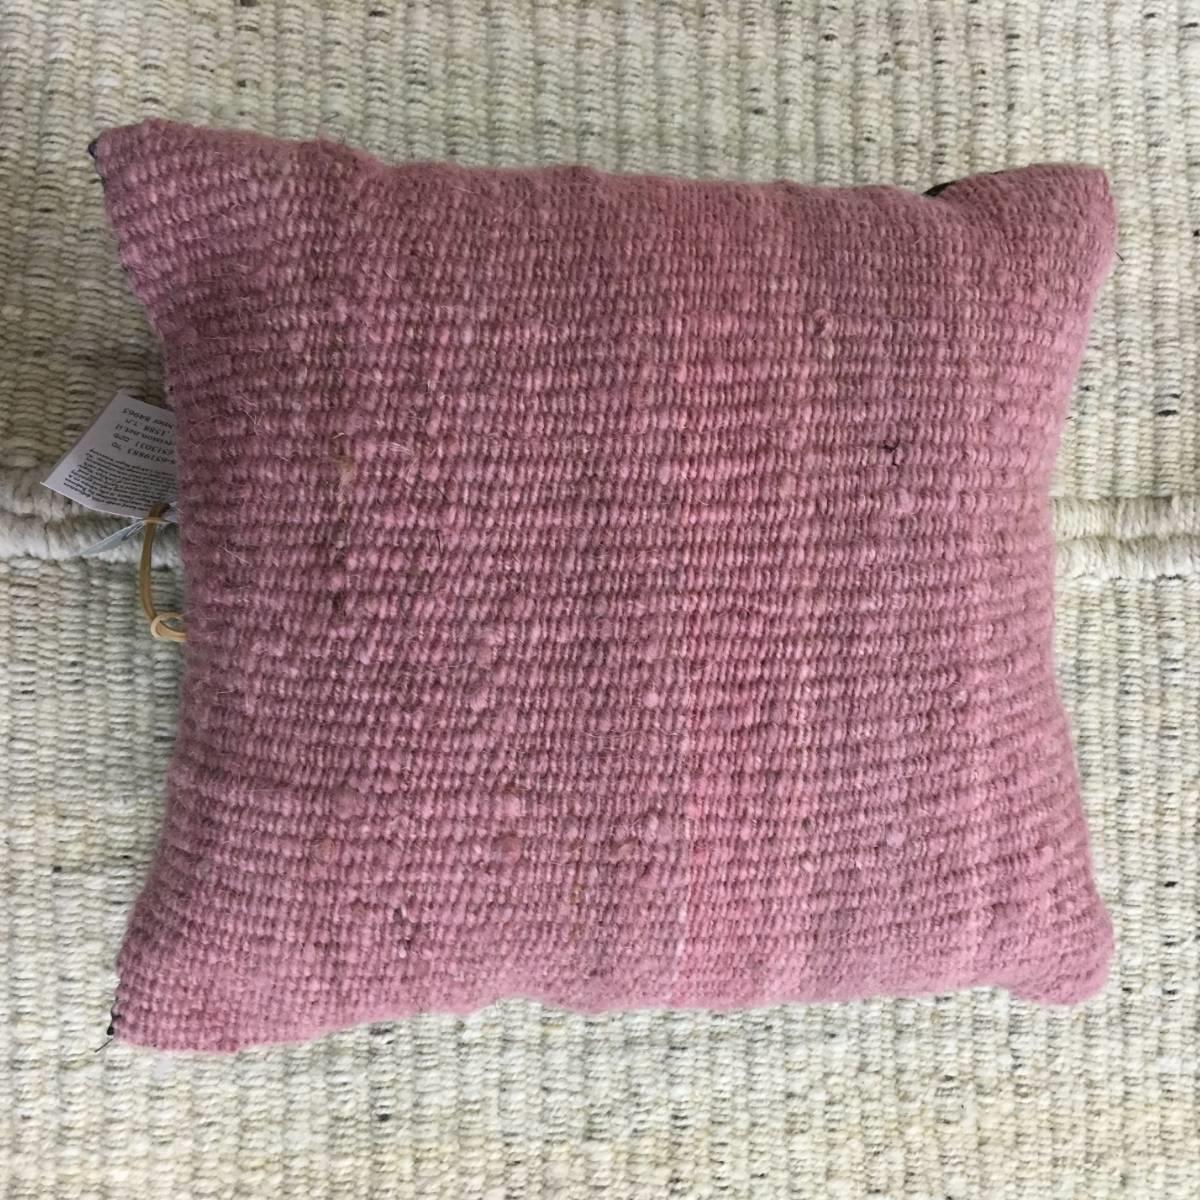 Pink pillow